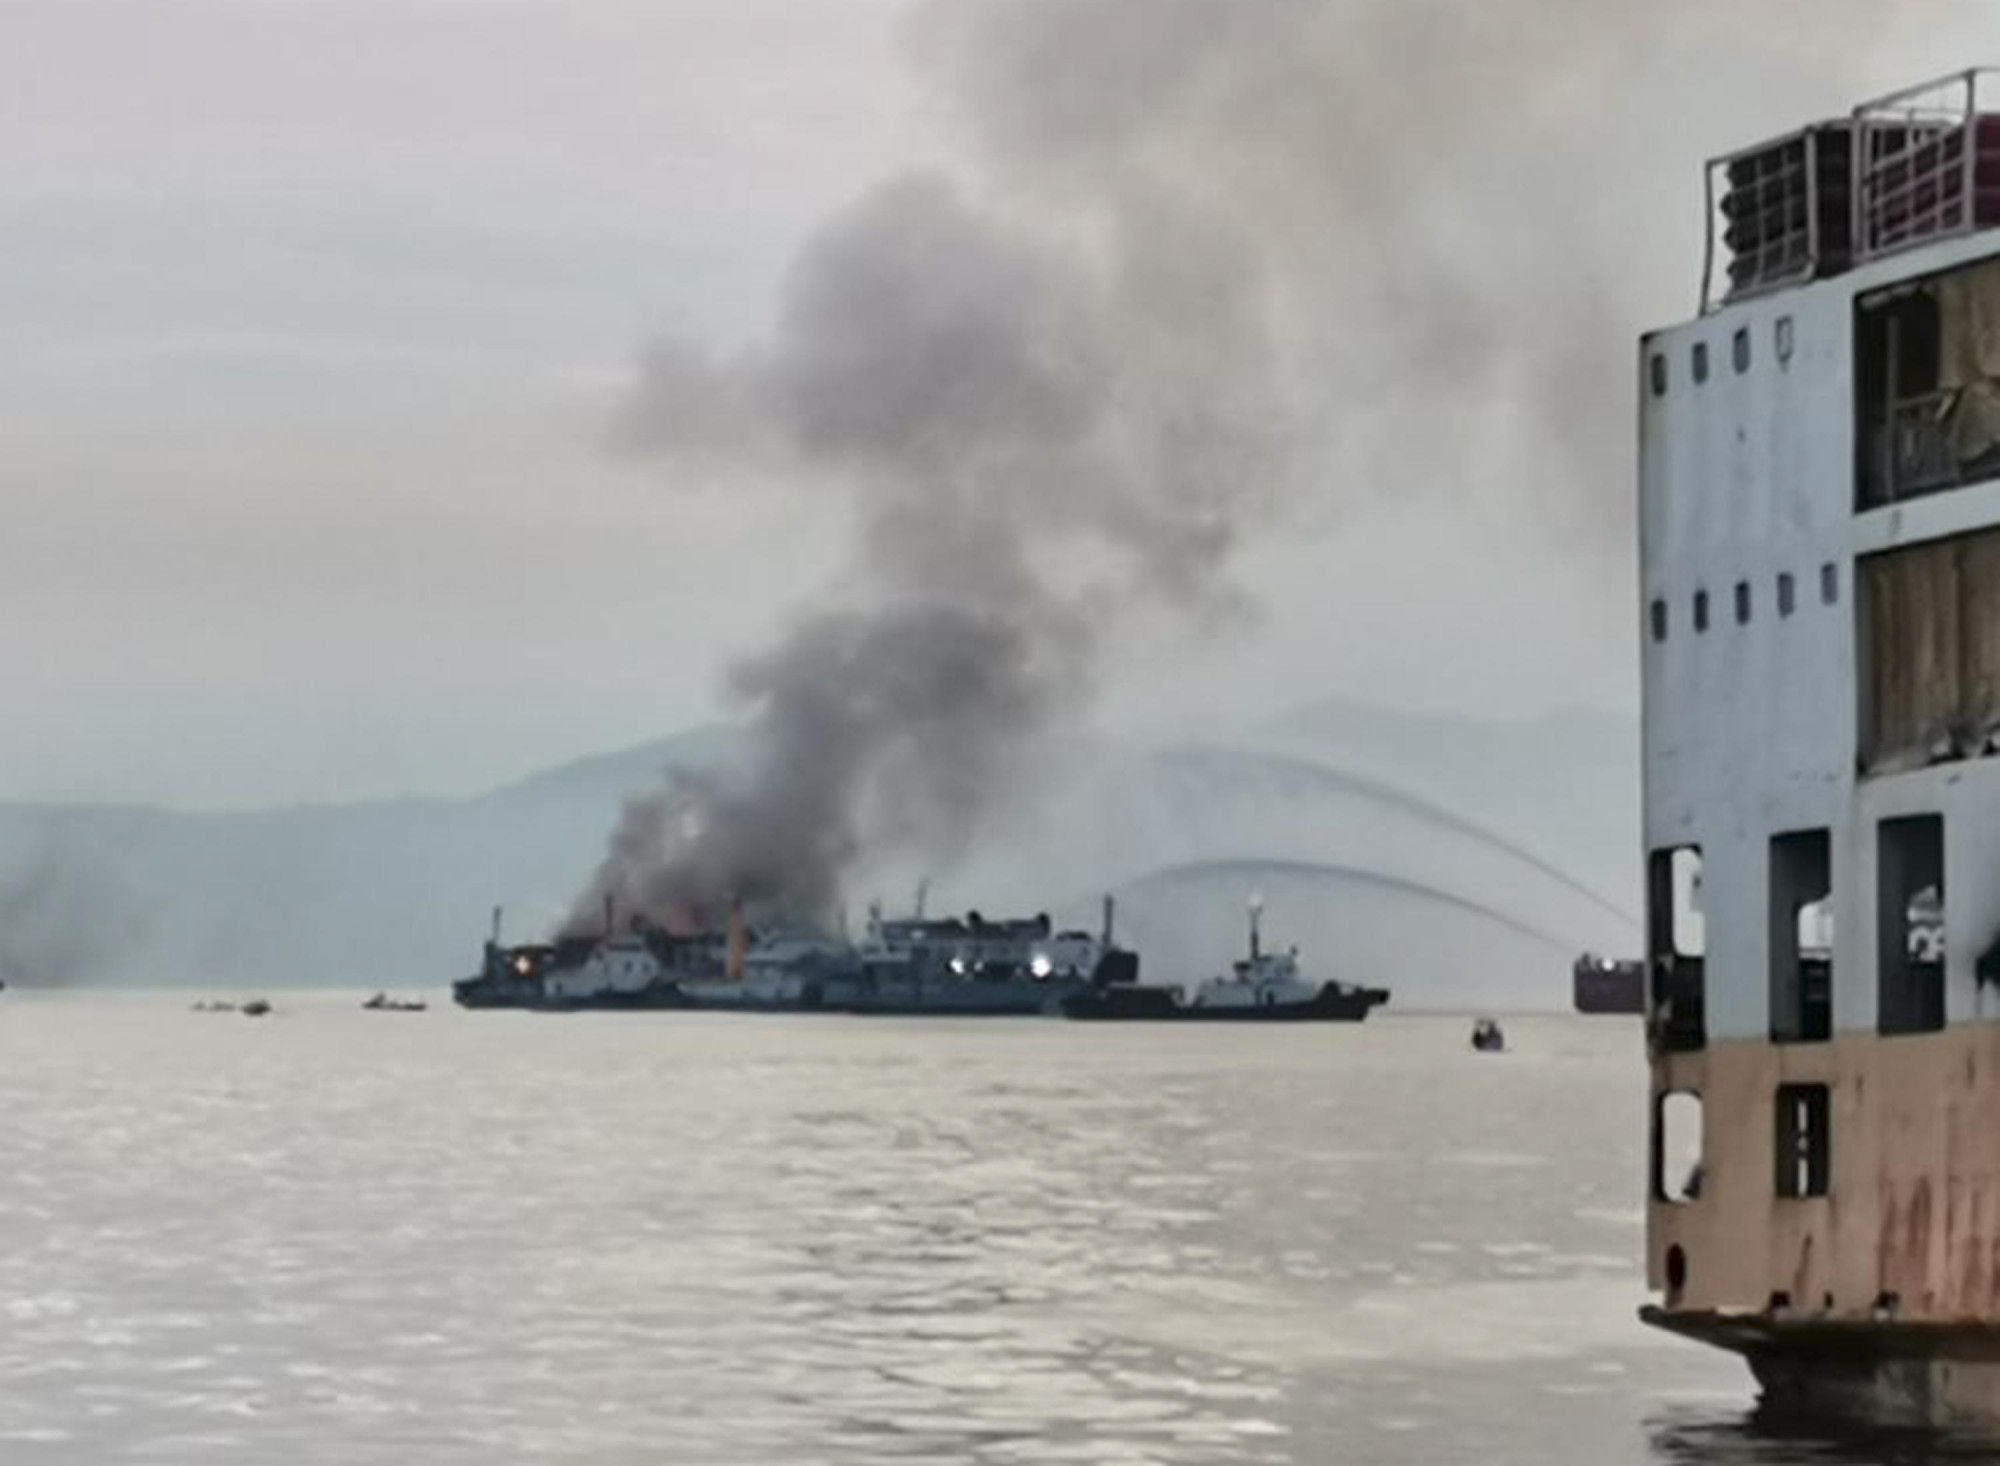 Phà chở 82 người ở Philippines bốc cháy trên biển.